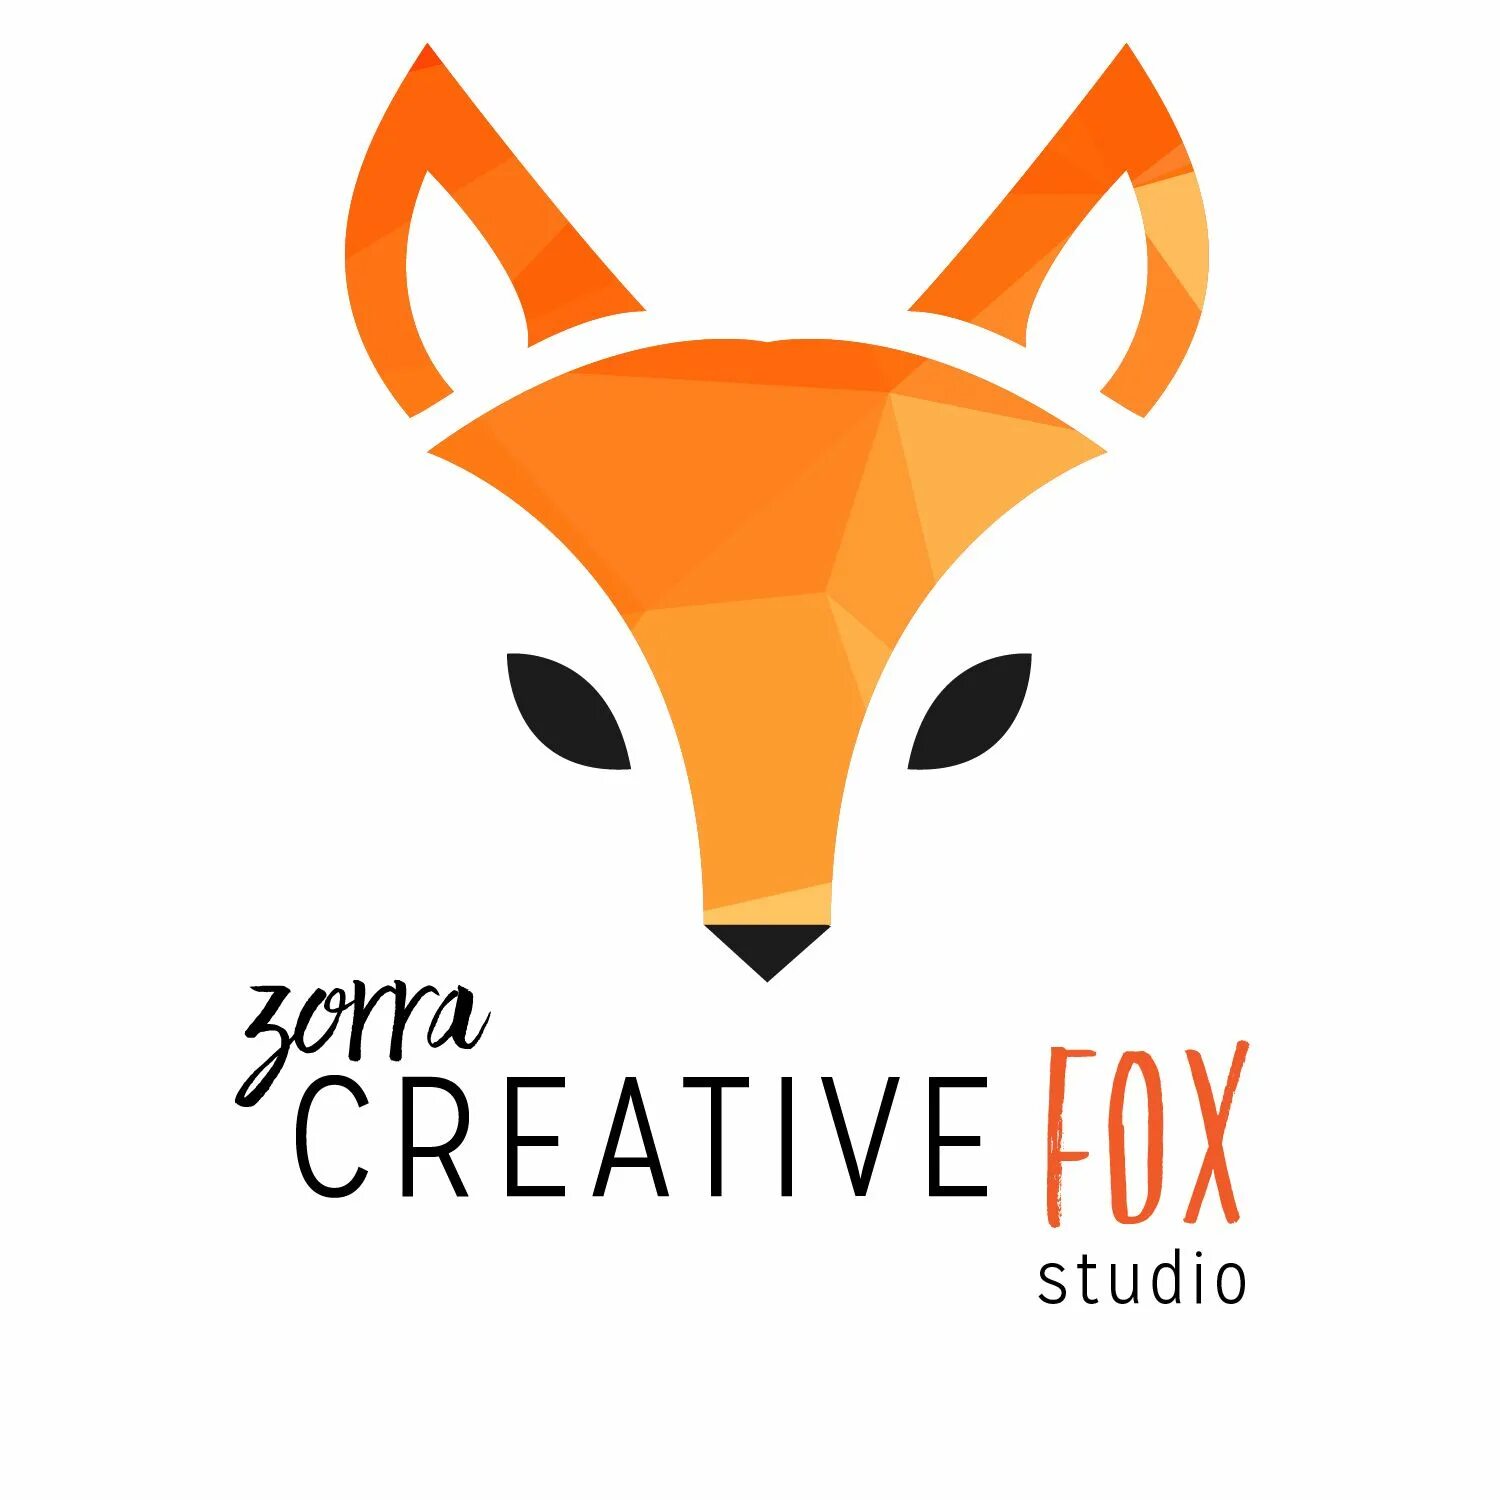 Креативная лиса. Studio Fox логотип лиса. Одежда с логотипом лисы. Лис полигонами. Fox tube